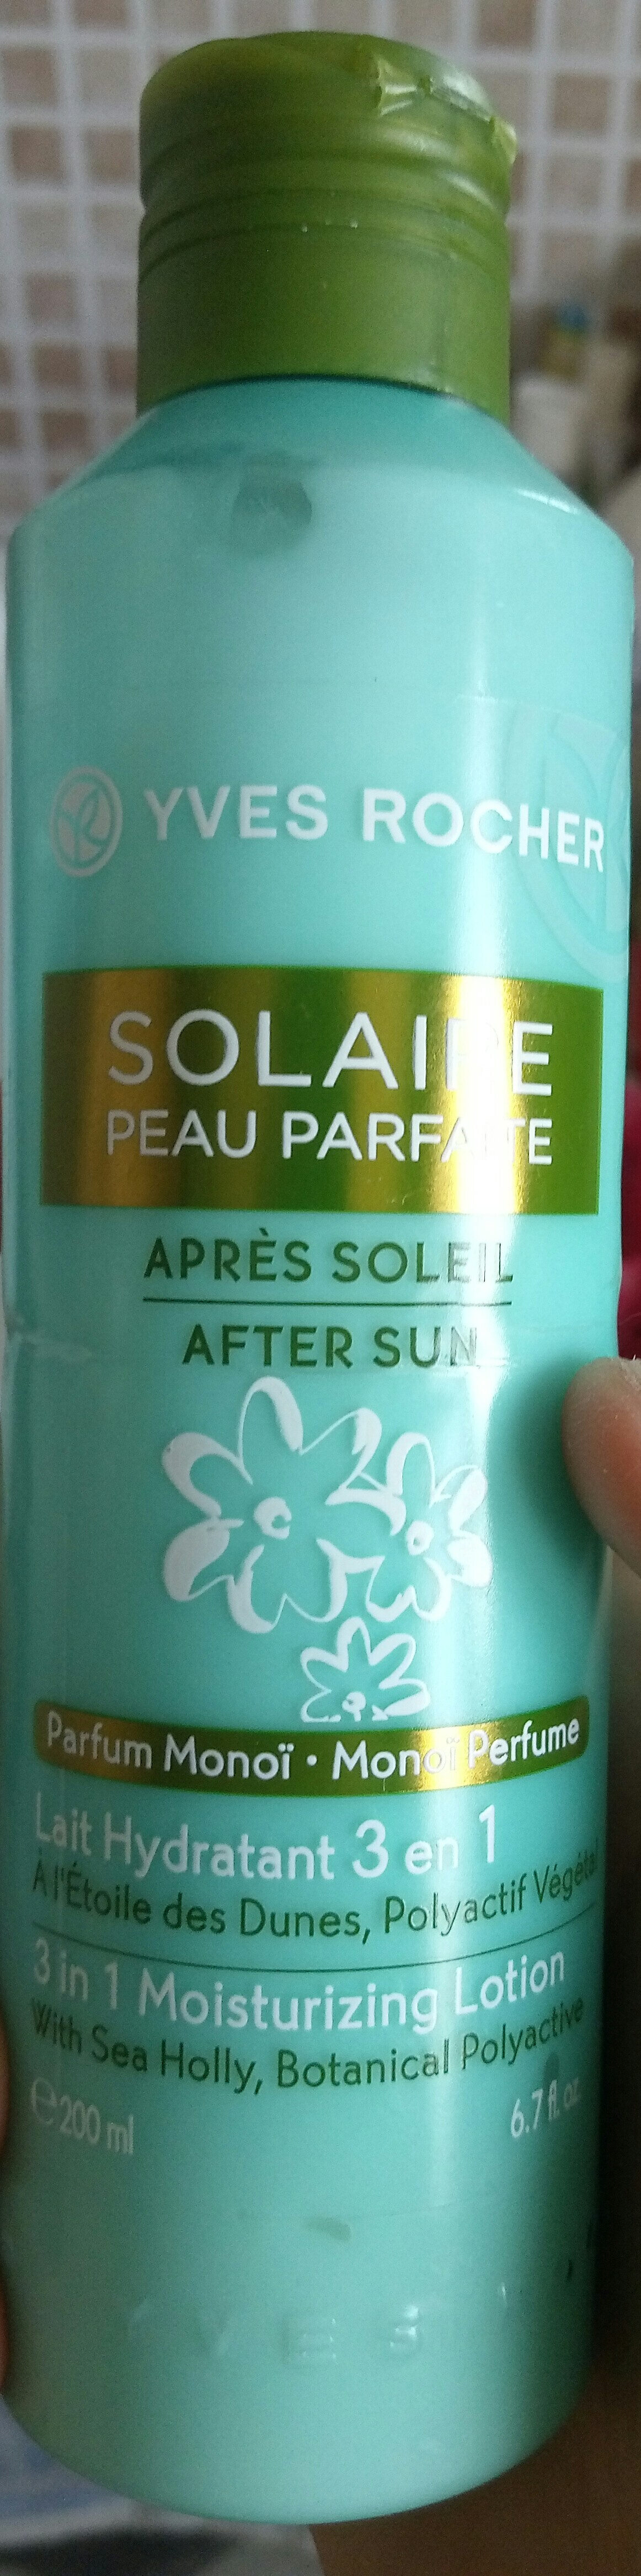 SOLAIRE PEAU PARFAITE - Produit - fr